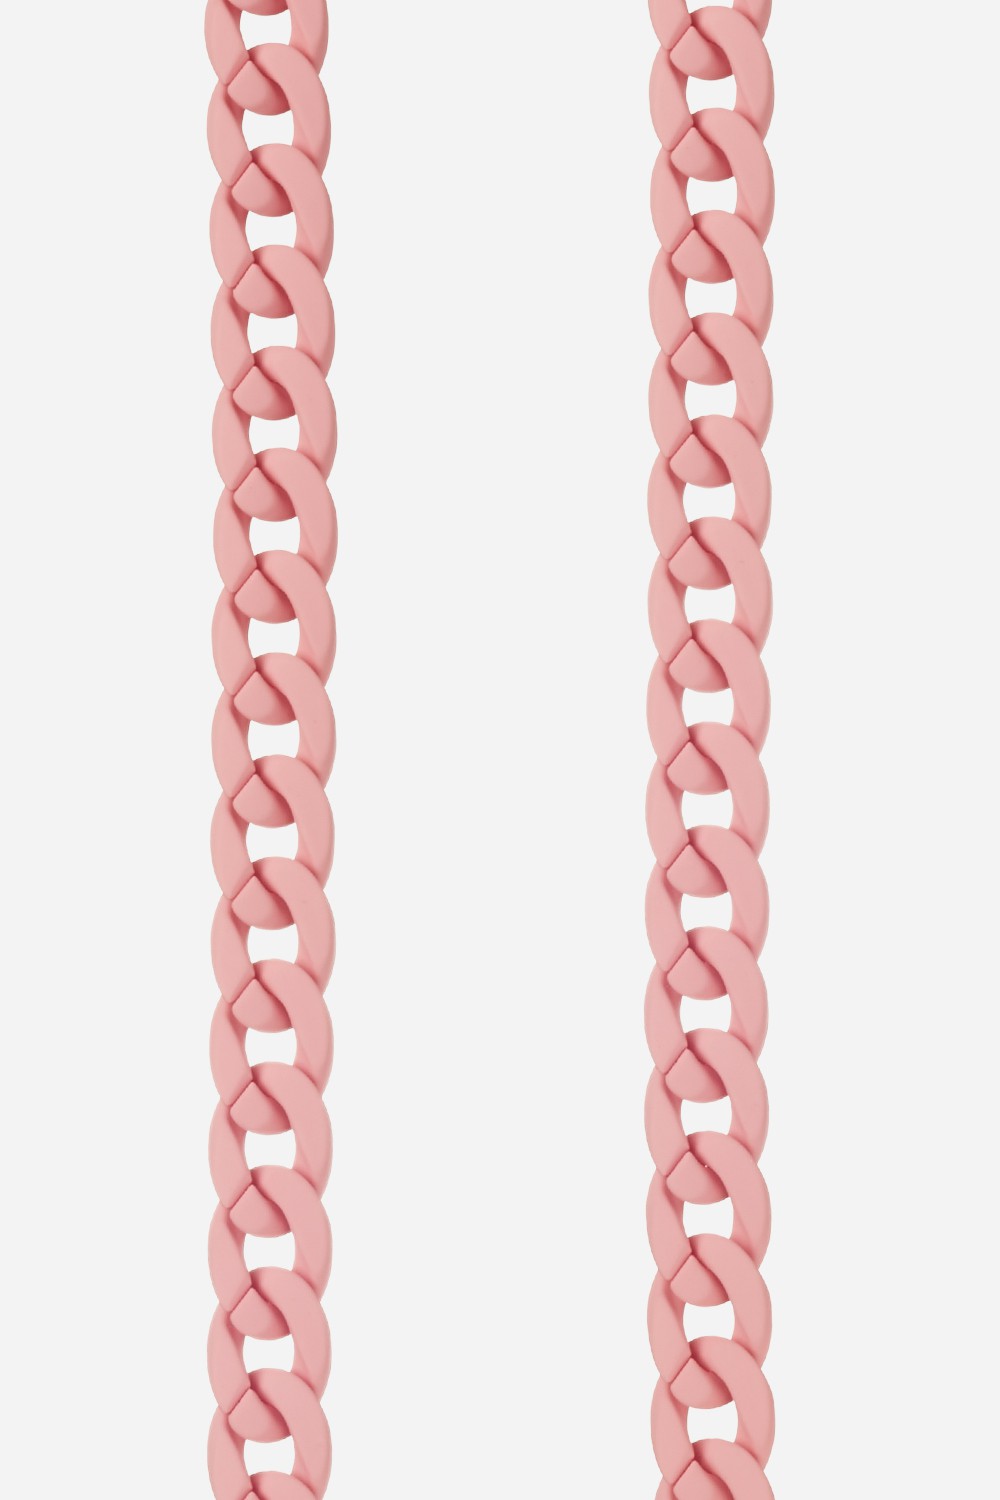 Chaine Longue Sarah Rose 120 cm